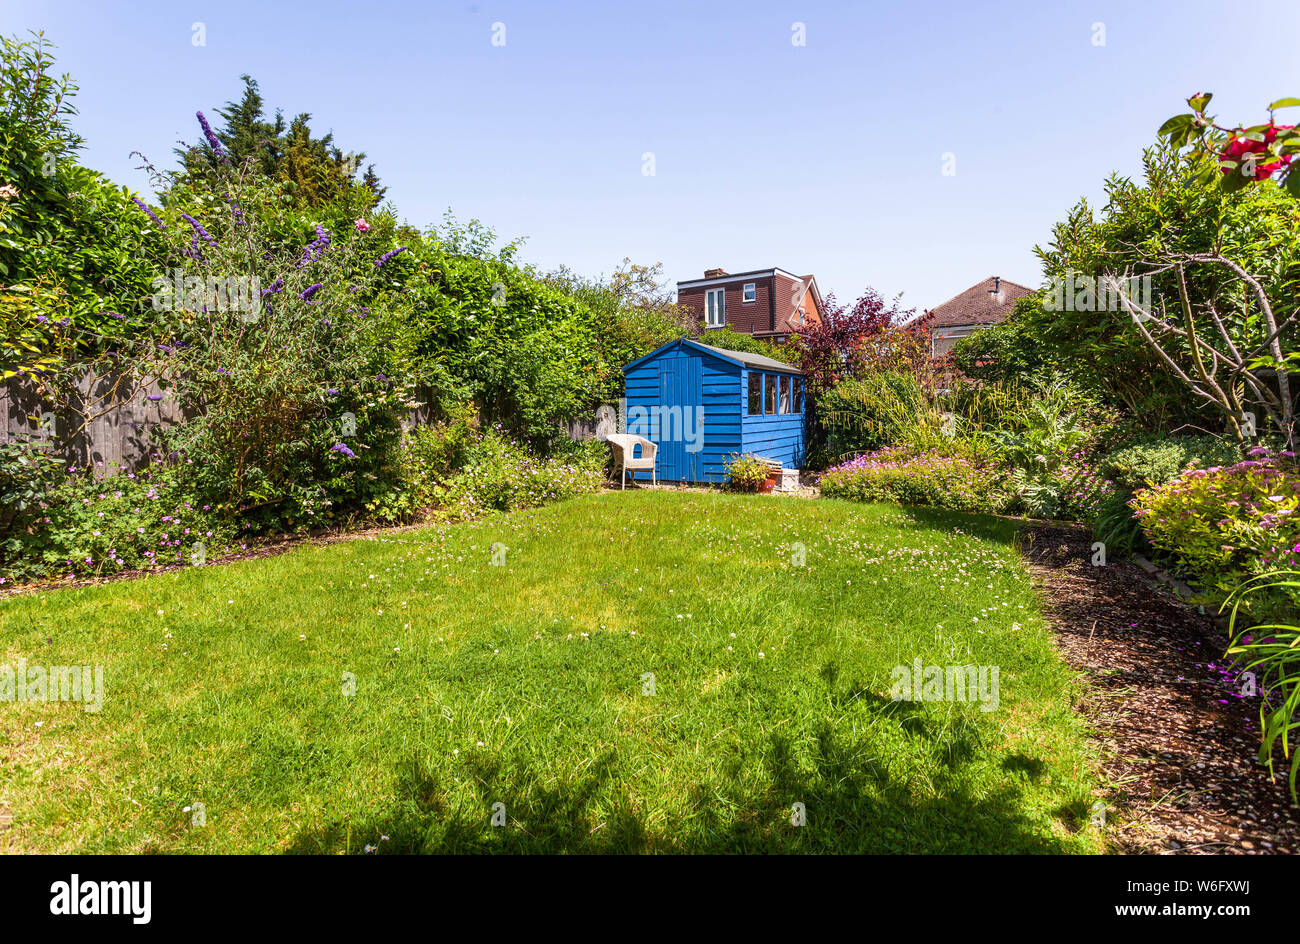 Verde casa giardino con un capannone blu in un angolo, Londra, Inghilterra, Regno Unito. Foto Stock